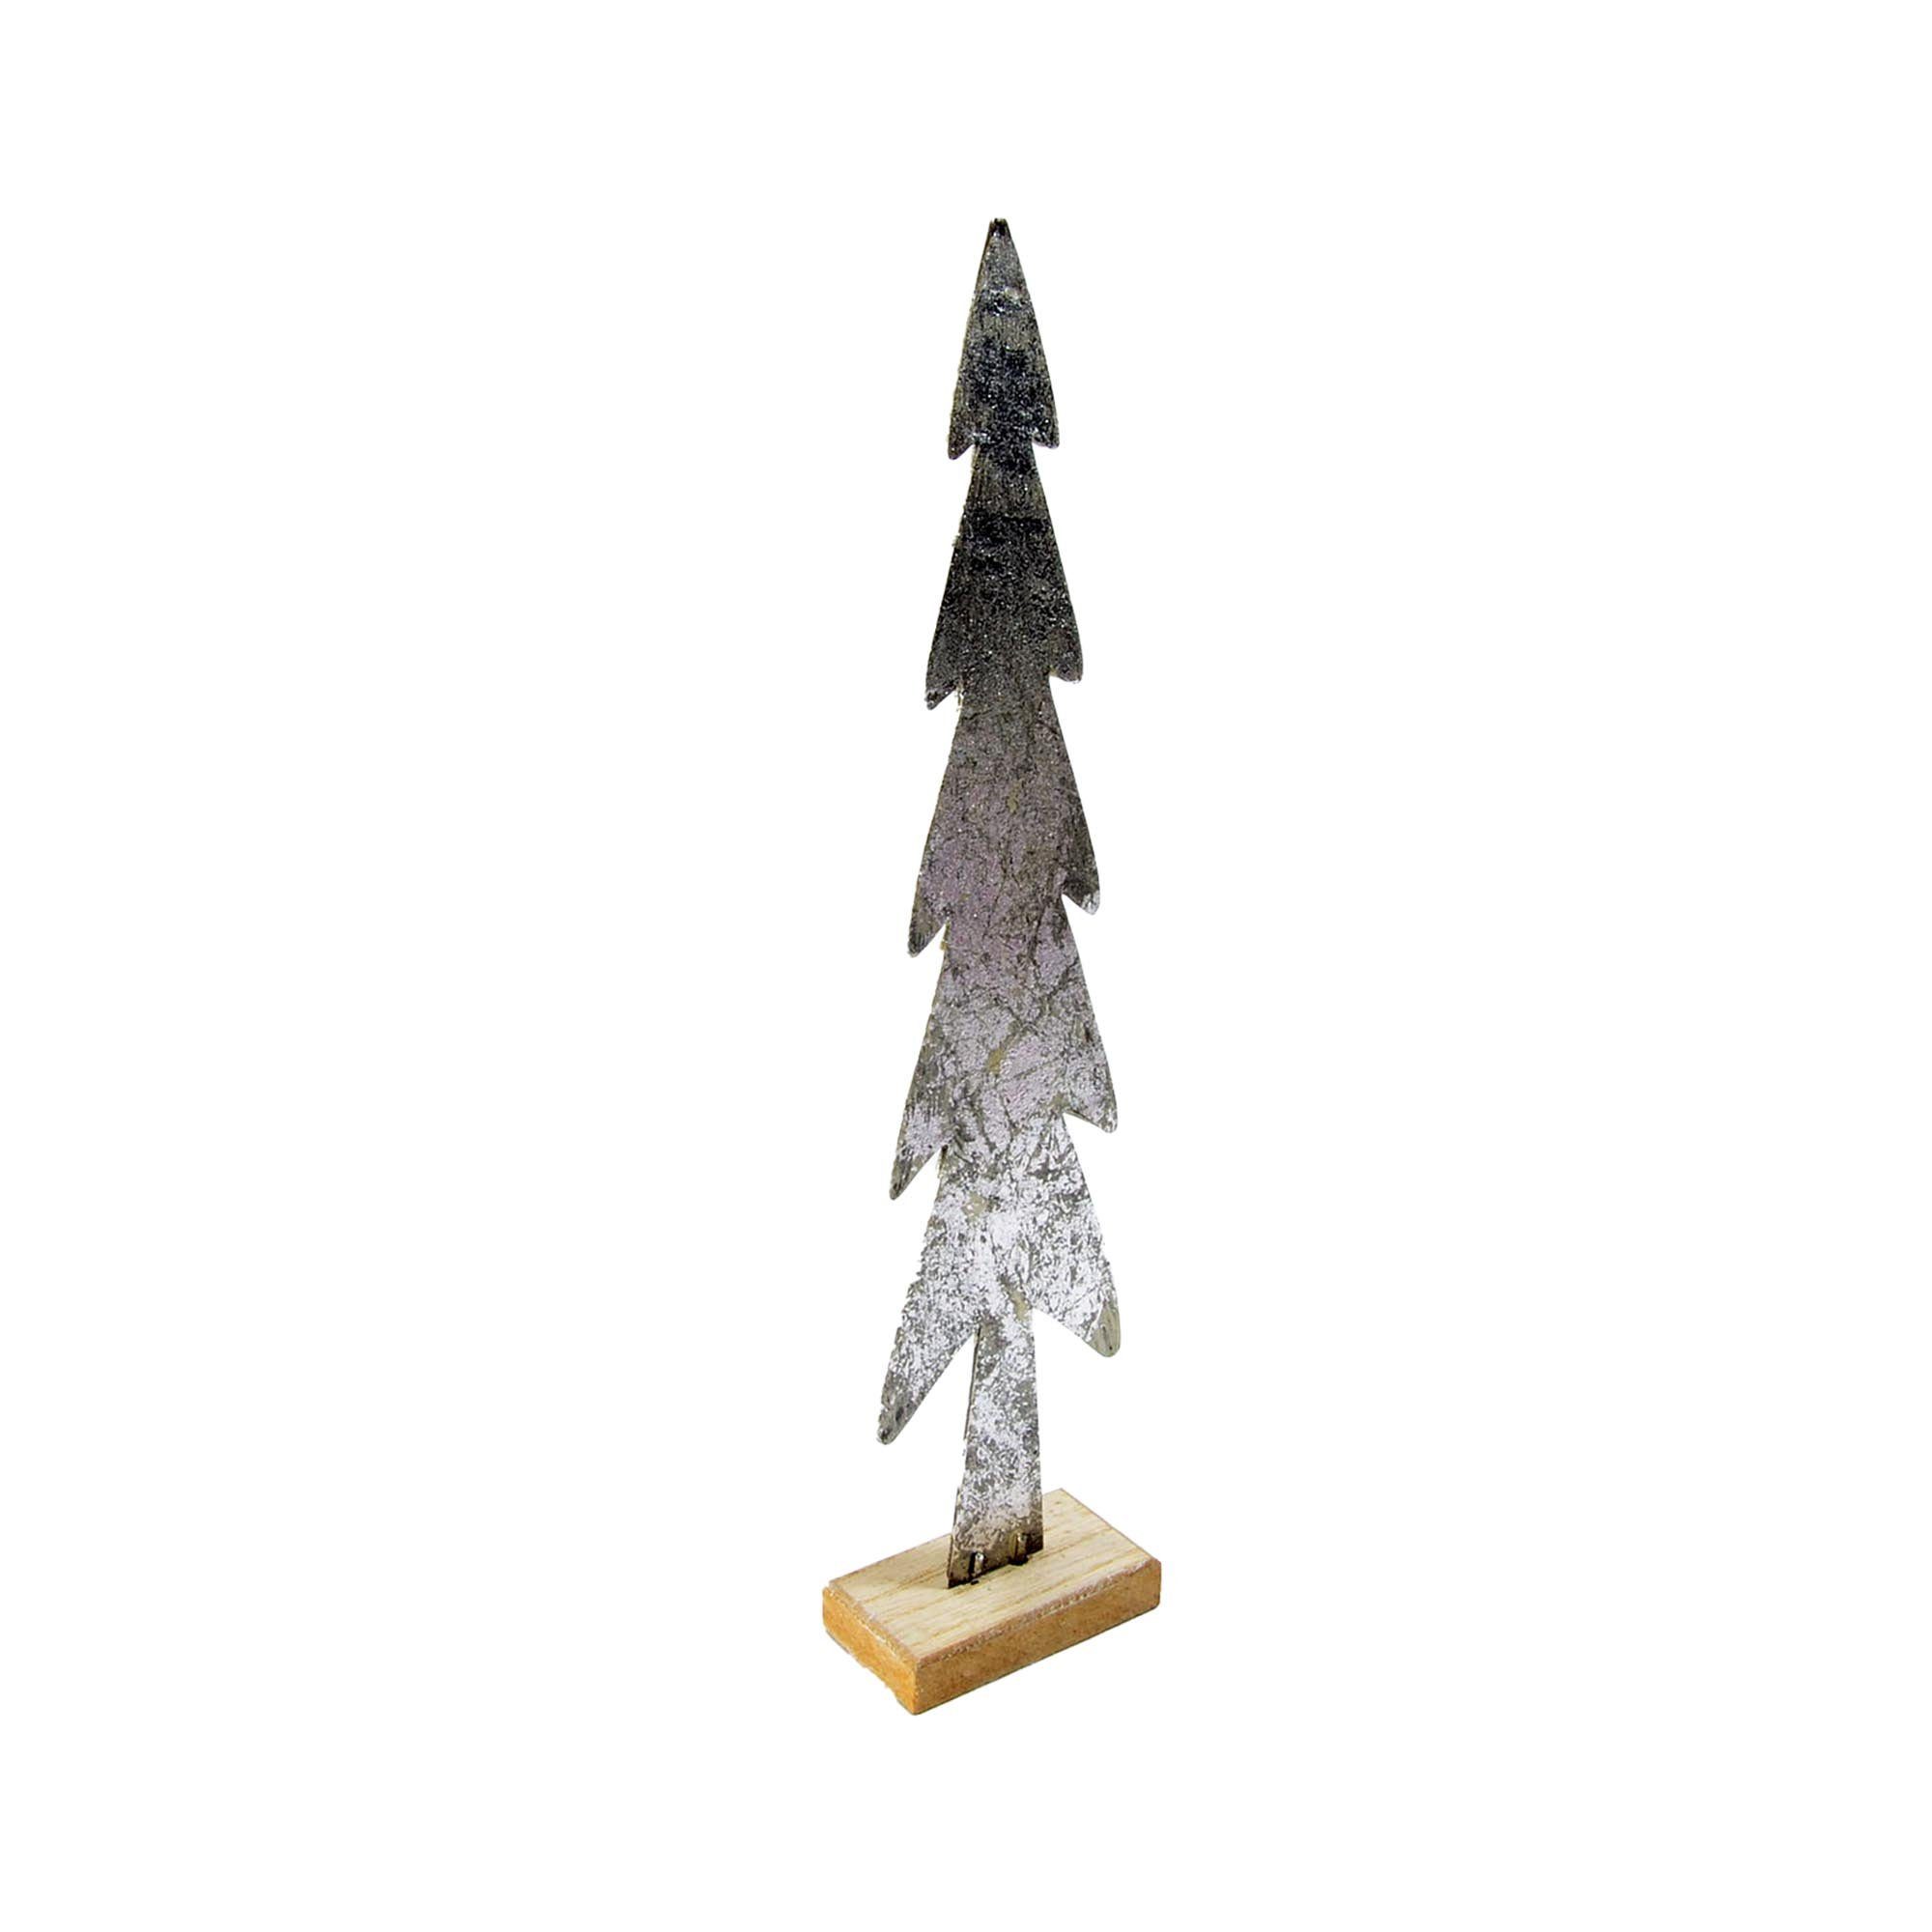 B&S Weihnachtsfigur Tanne Metall 36x8x4,5 cm auf Holzfuß